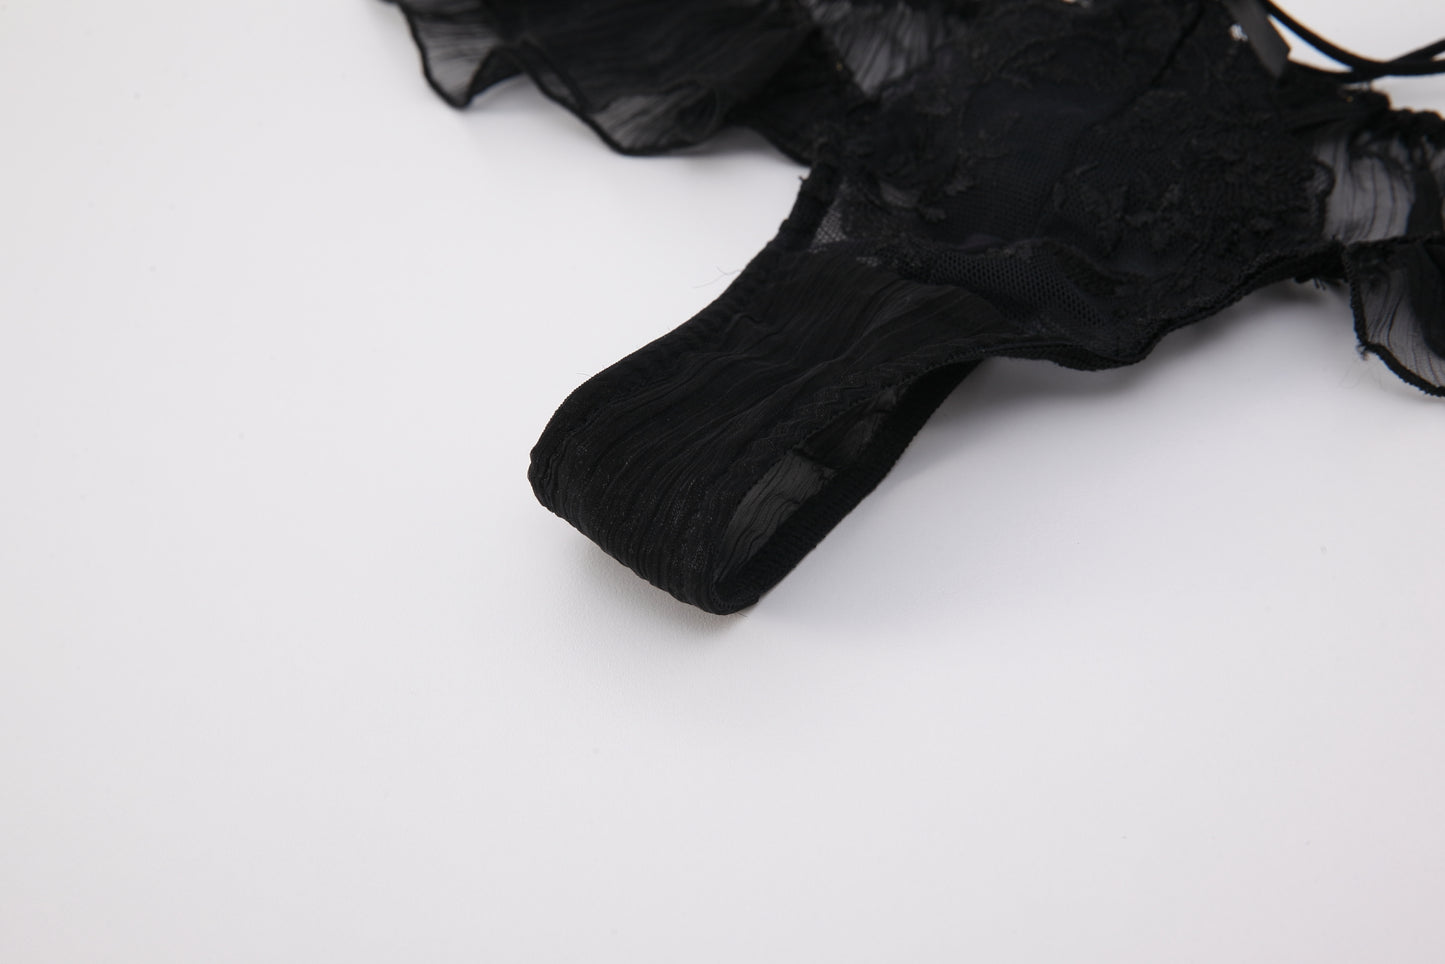 Seductive Black Sheer Lace Panties - Elegant and Alluring